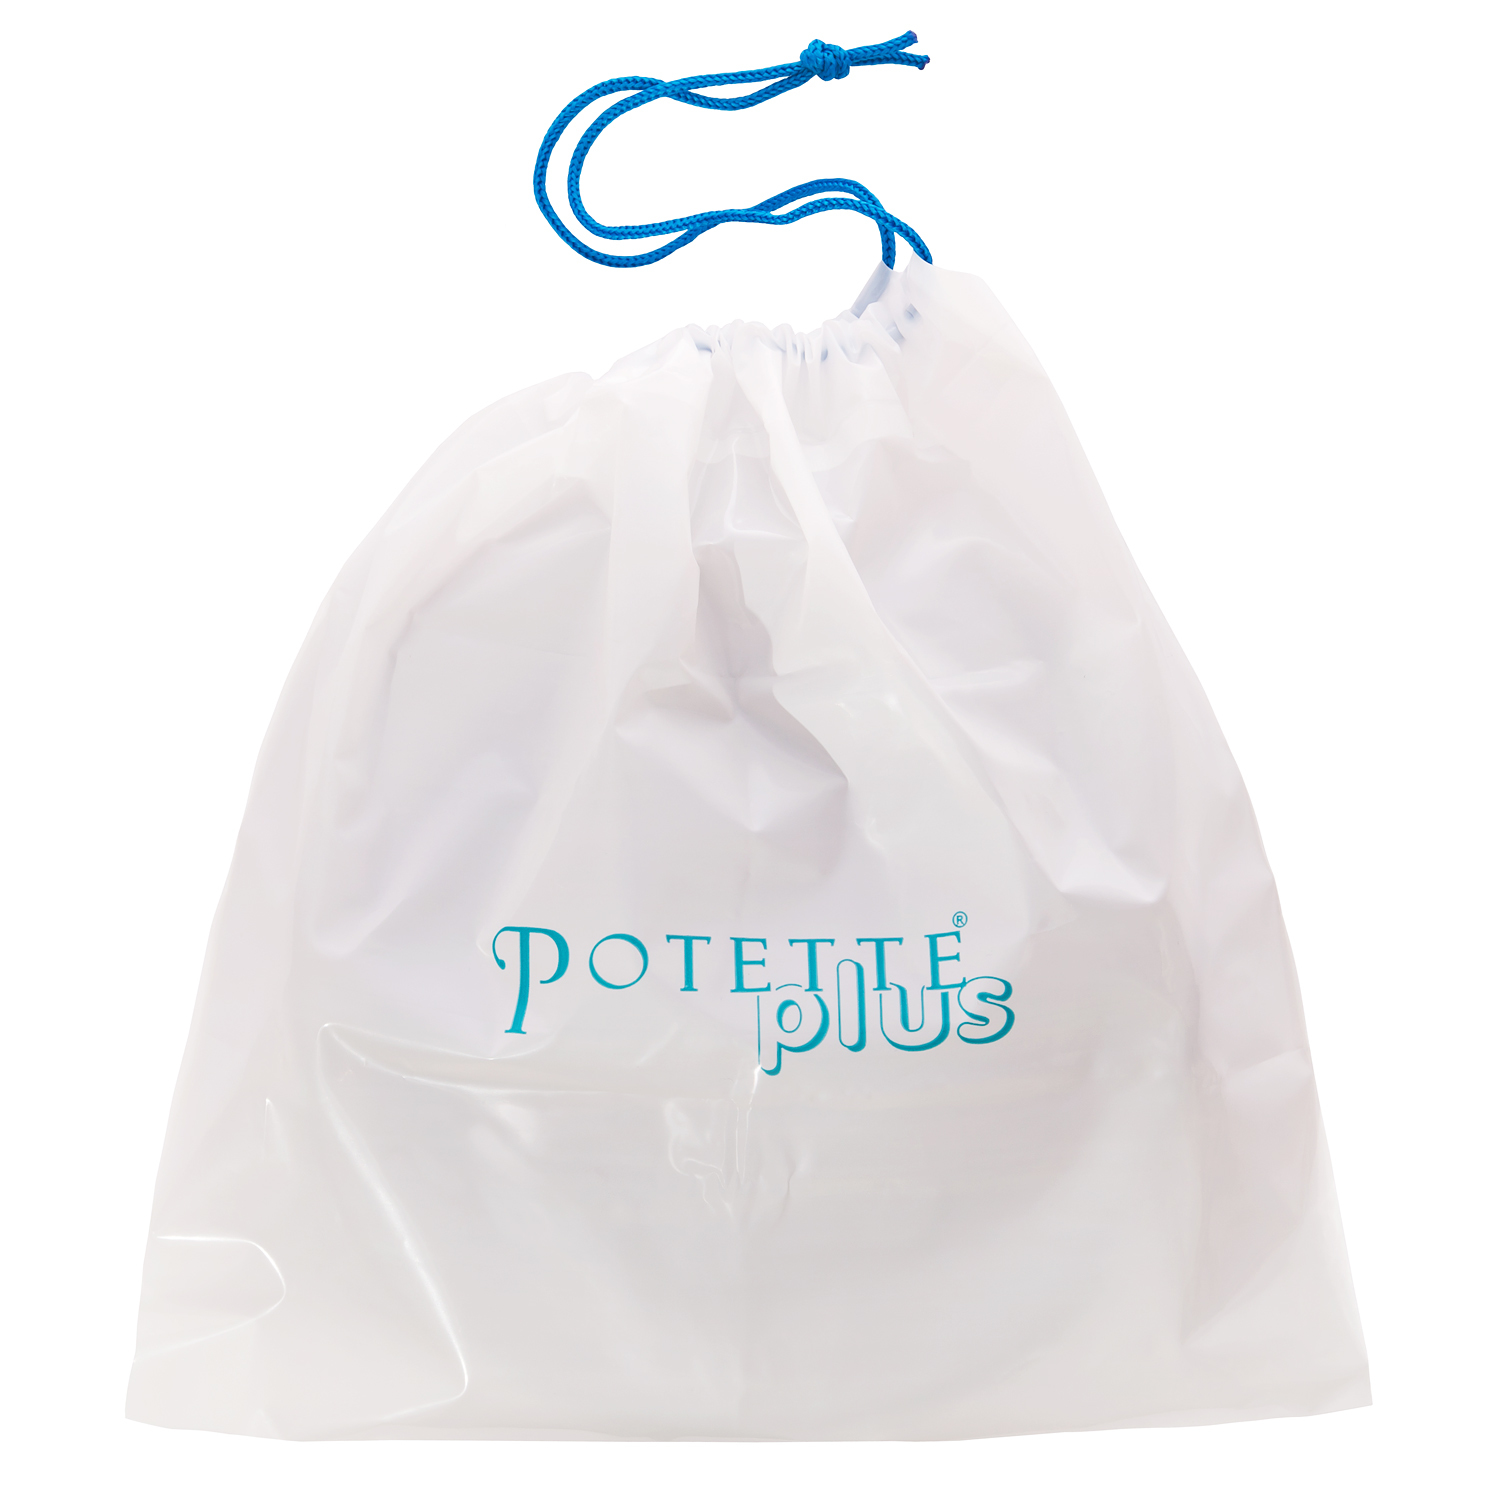 Дорожный горшок Potette Plus с вставкой из силикона и набором одноразовых пакетов - фото 10